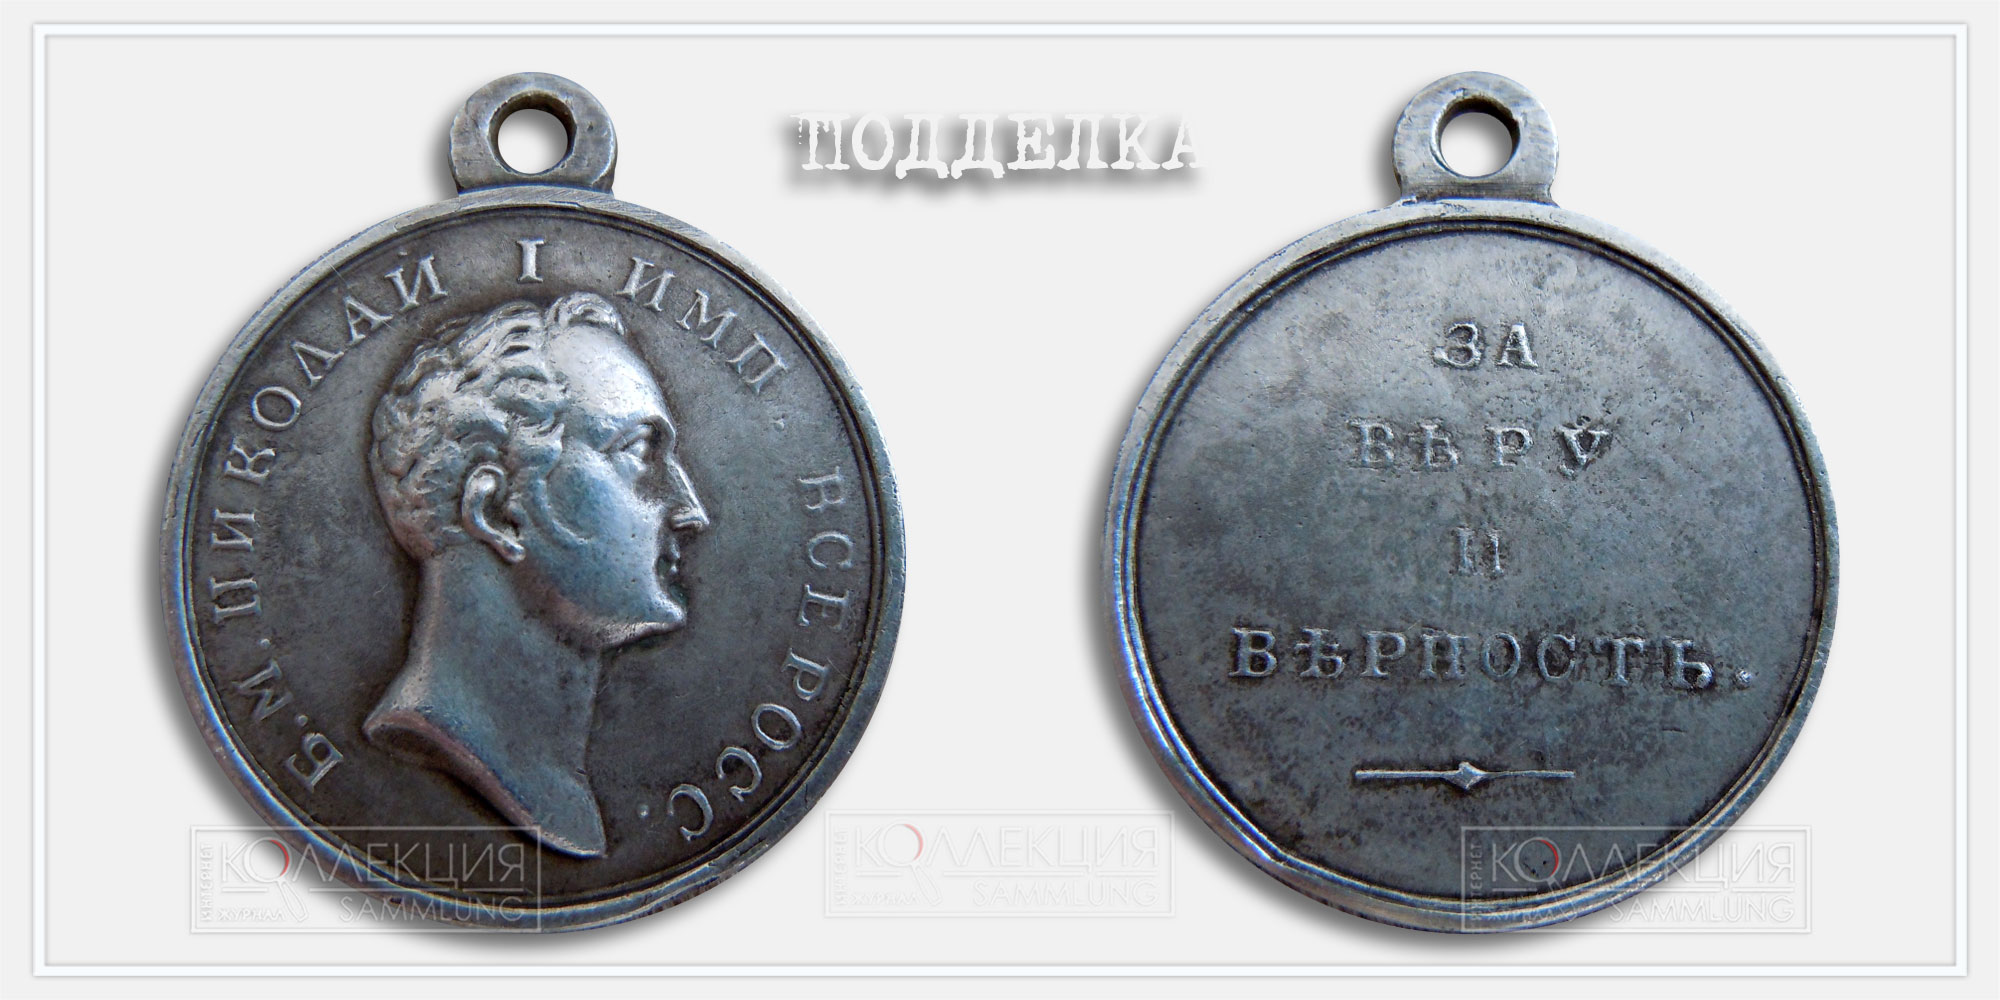 Медаль "За веру и верность" Николай I Копия